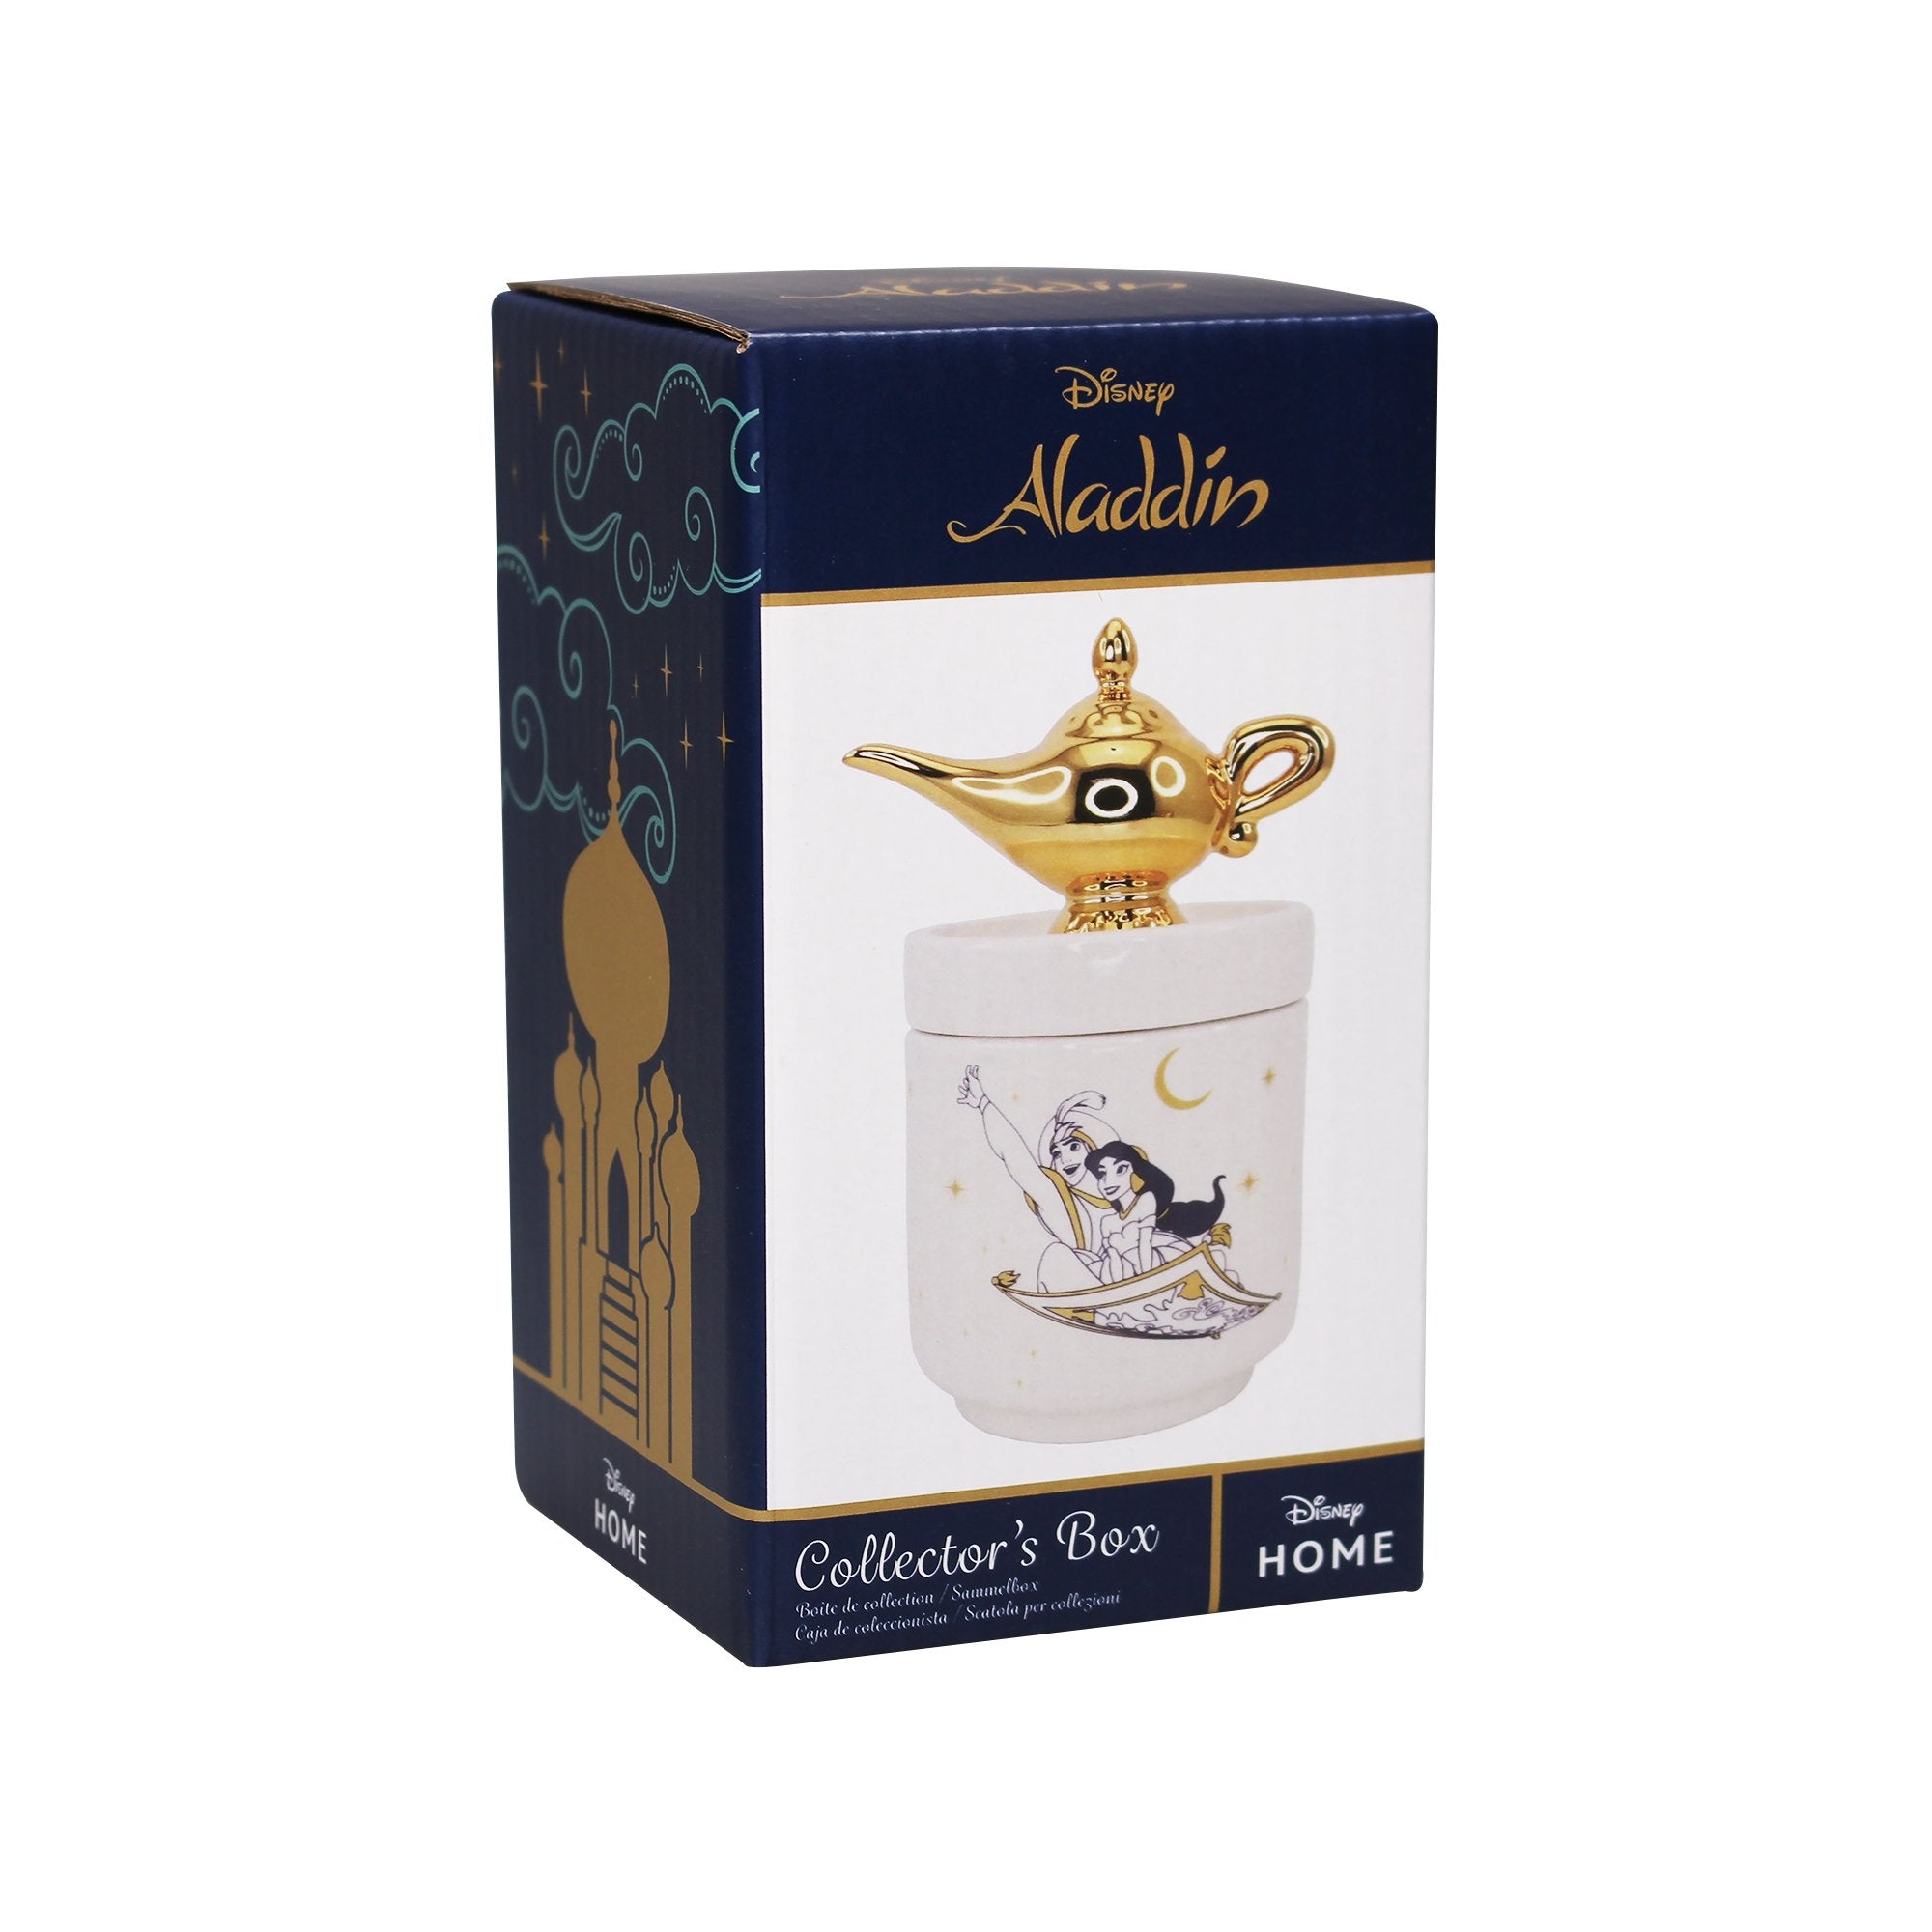 Collector's Box Boxed (14cm) - Disney Aladdin (Lamp)